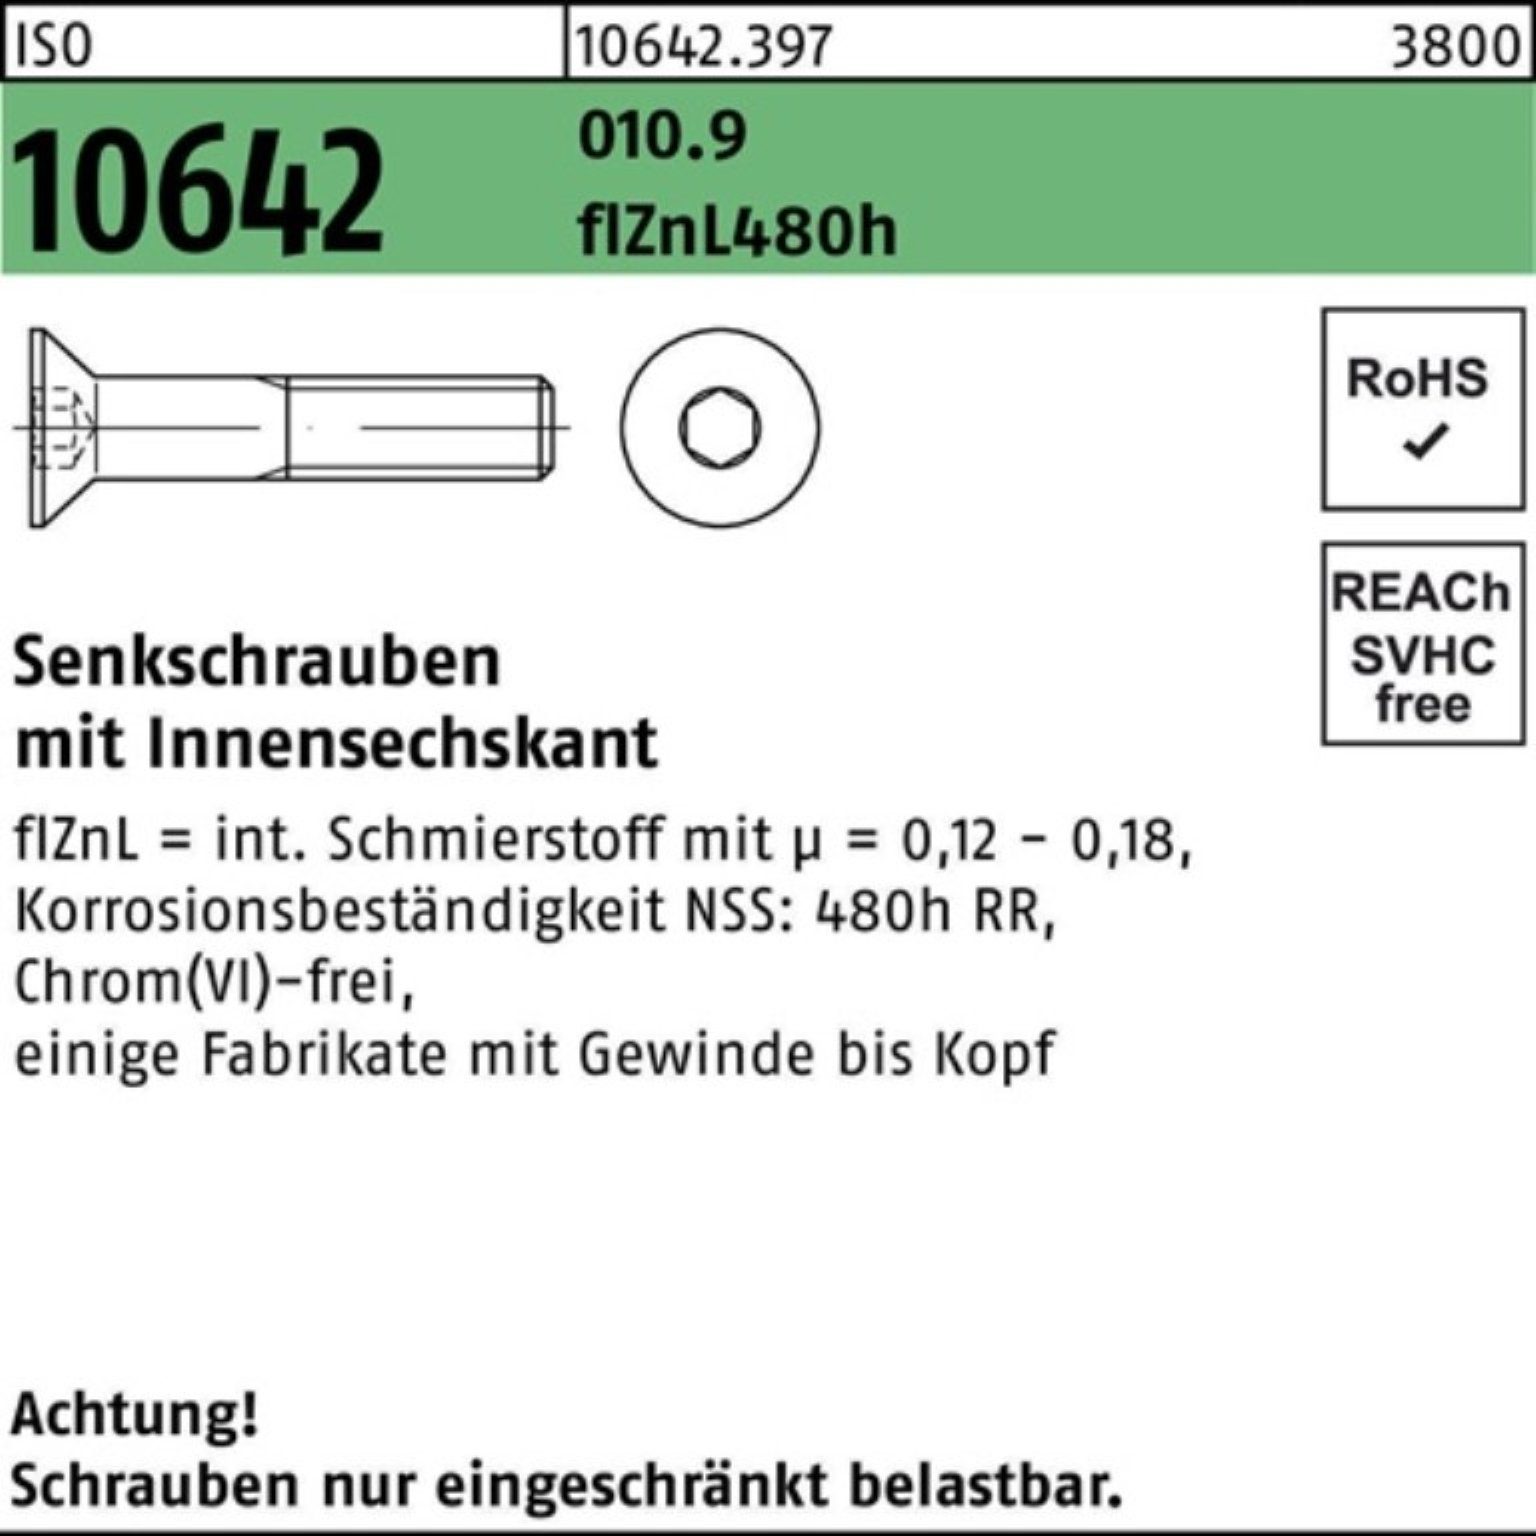 Senkschraube zi Pack ISO Innen-6kt 100er 480h M12x50 10642 flZnL 010.9 Reyher Senkschraube